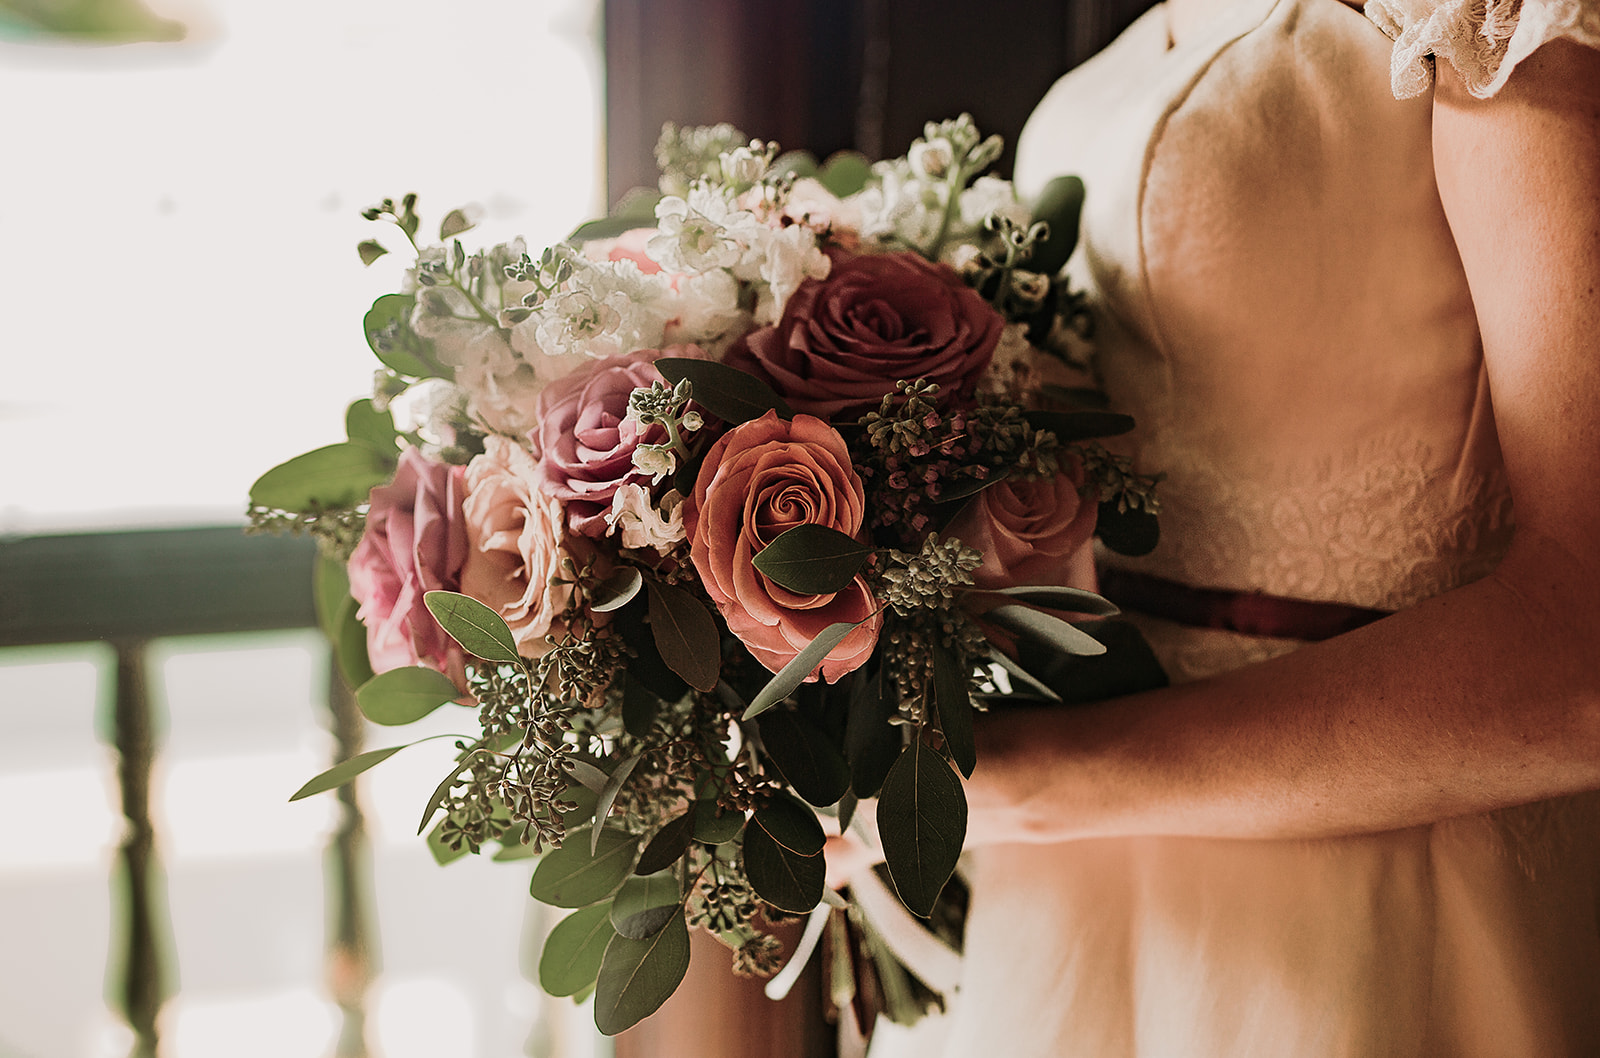 Burgundy & Pink Wedding Bouquet - Vintage